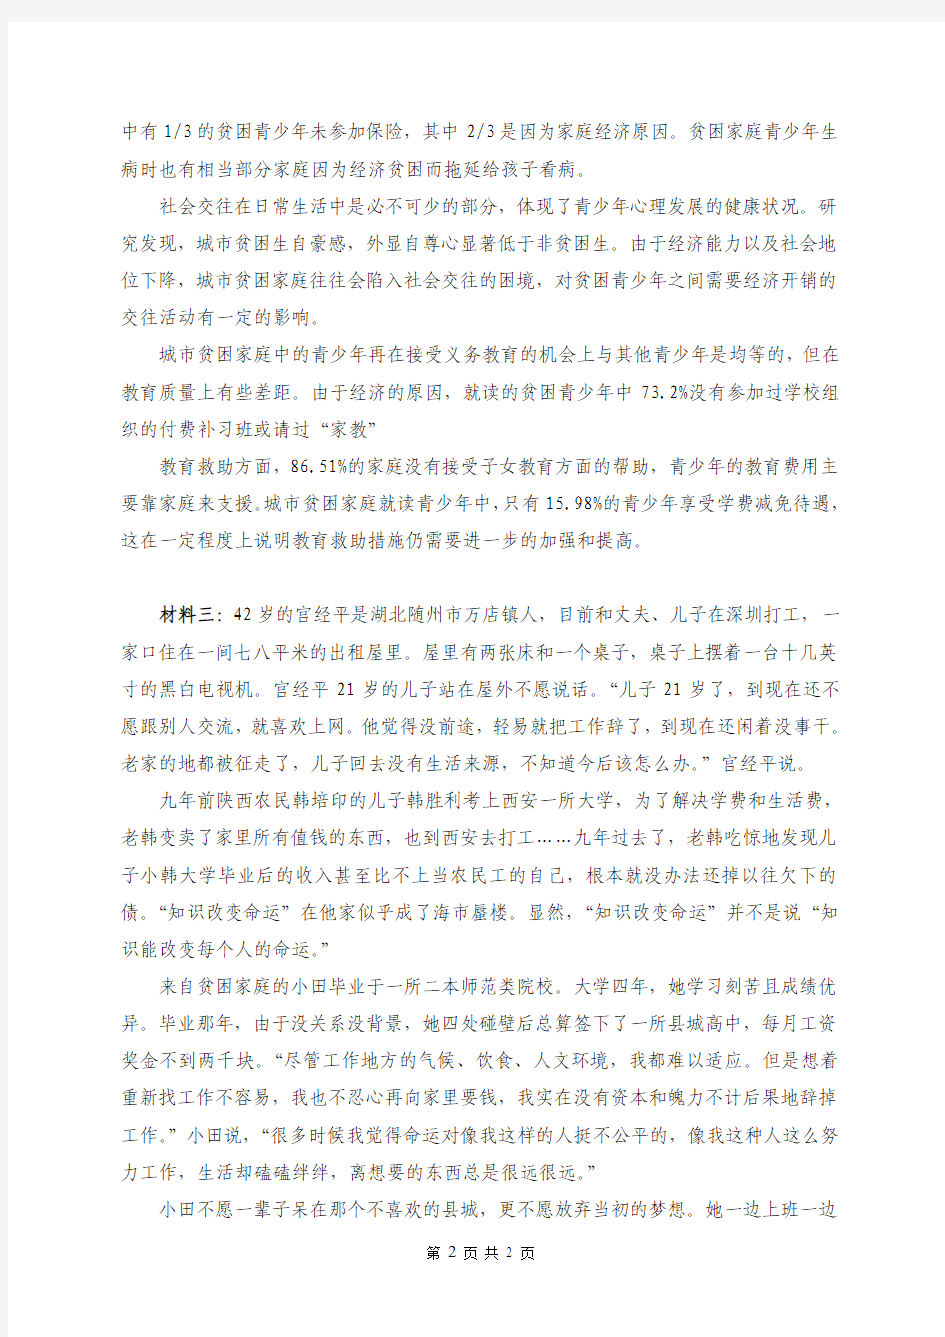 2013年广州市公务员考试申论真题及经典解析